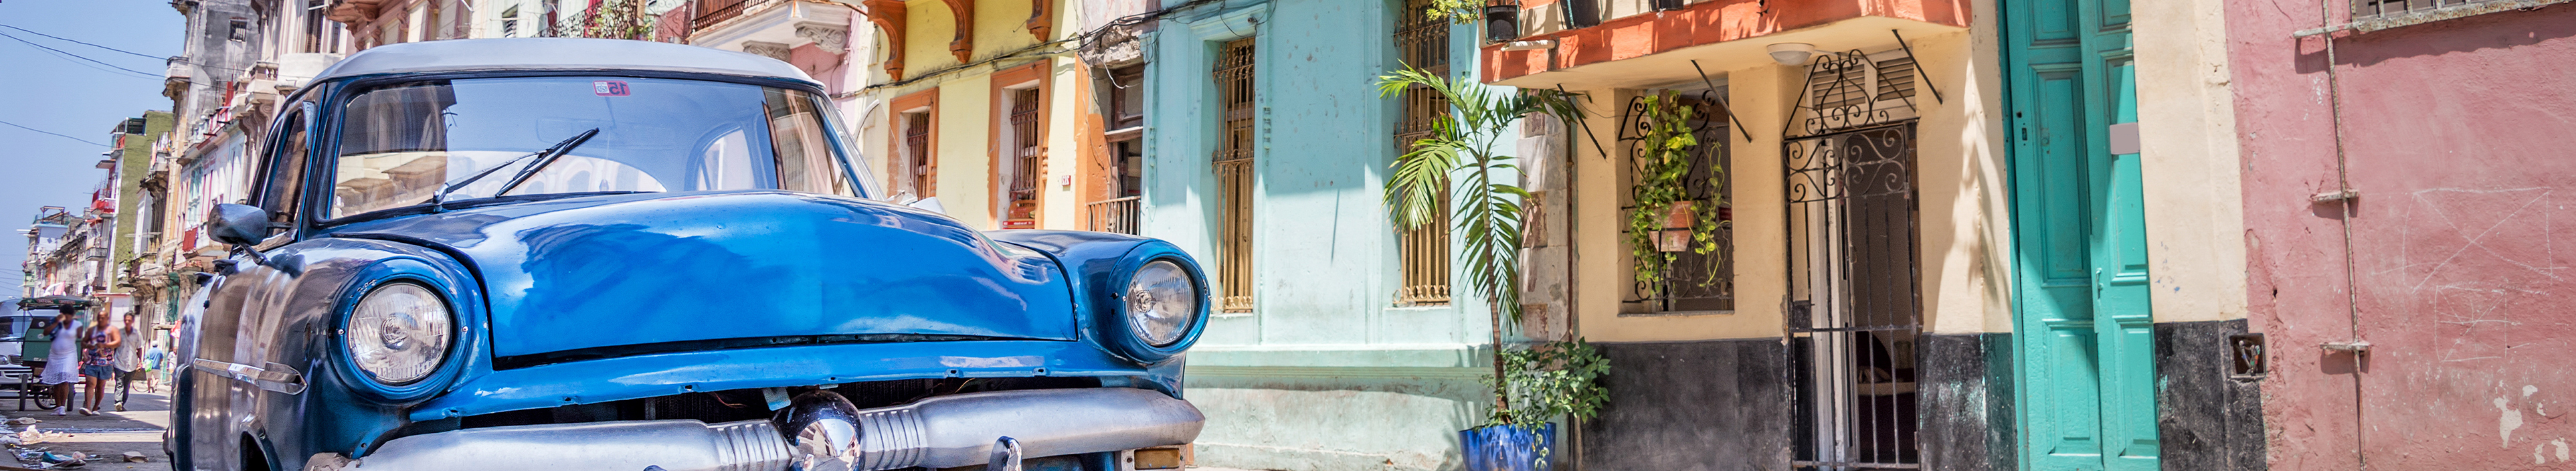 Klassisches amerikanischer blauer Oldtimer in einer farbenfrohen Straße von Havanna, Kuba